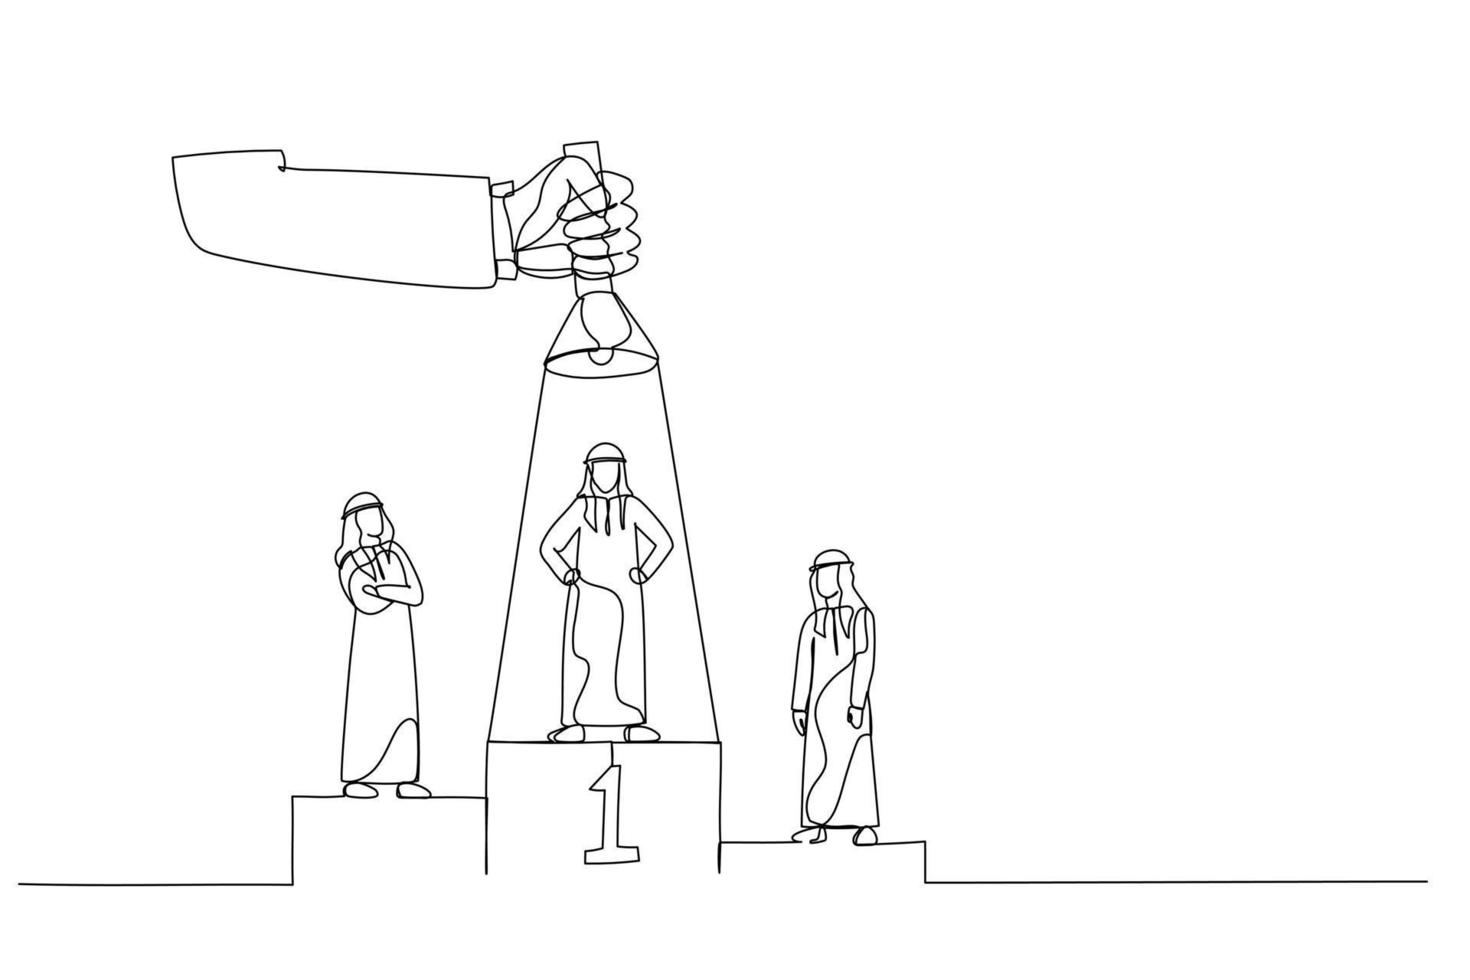 caricatura de un hombre de negocios árabe en el podio, uno de ellos iluminado por una gran mano desde arriba usando una linterna. estilo de arte de línea continua única vector